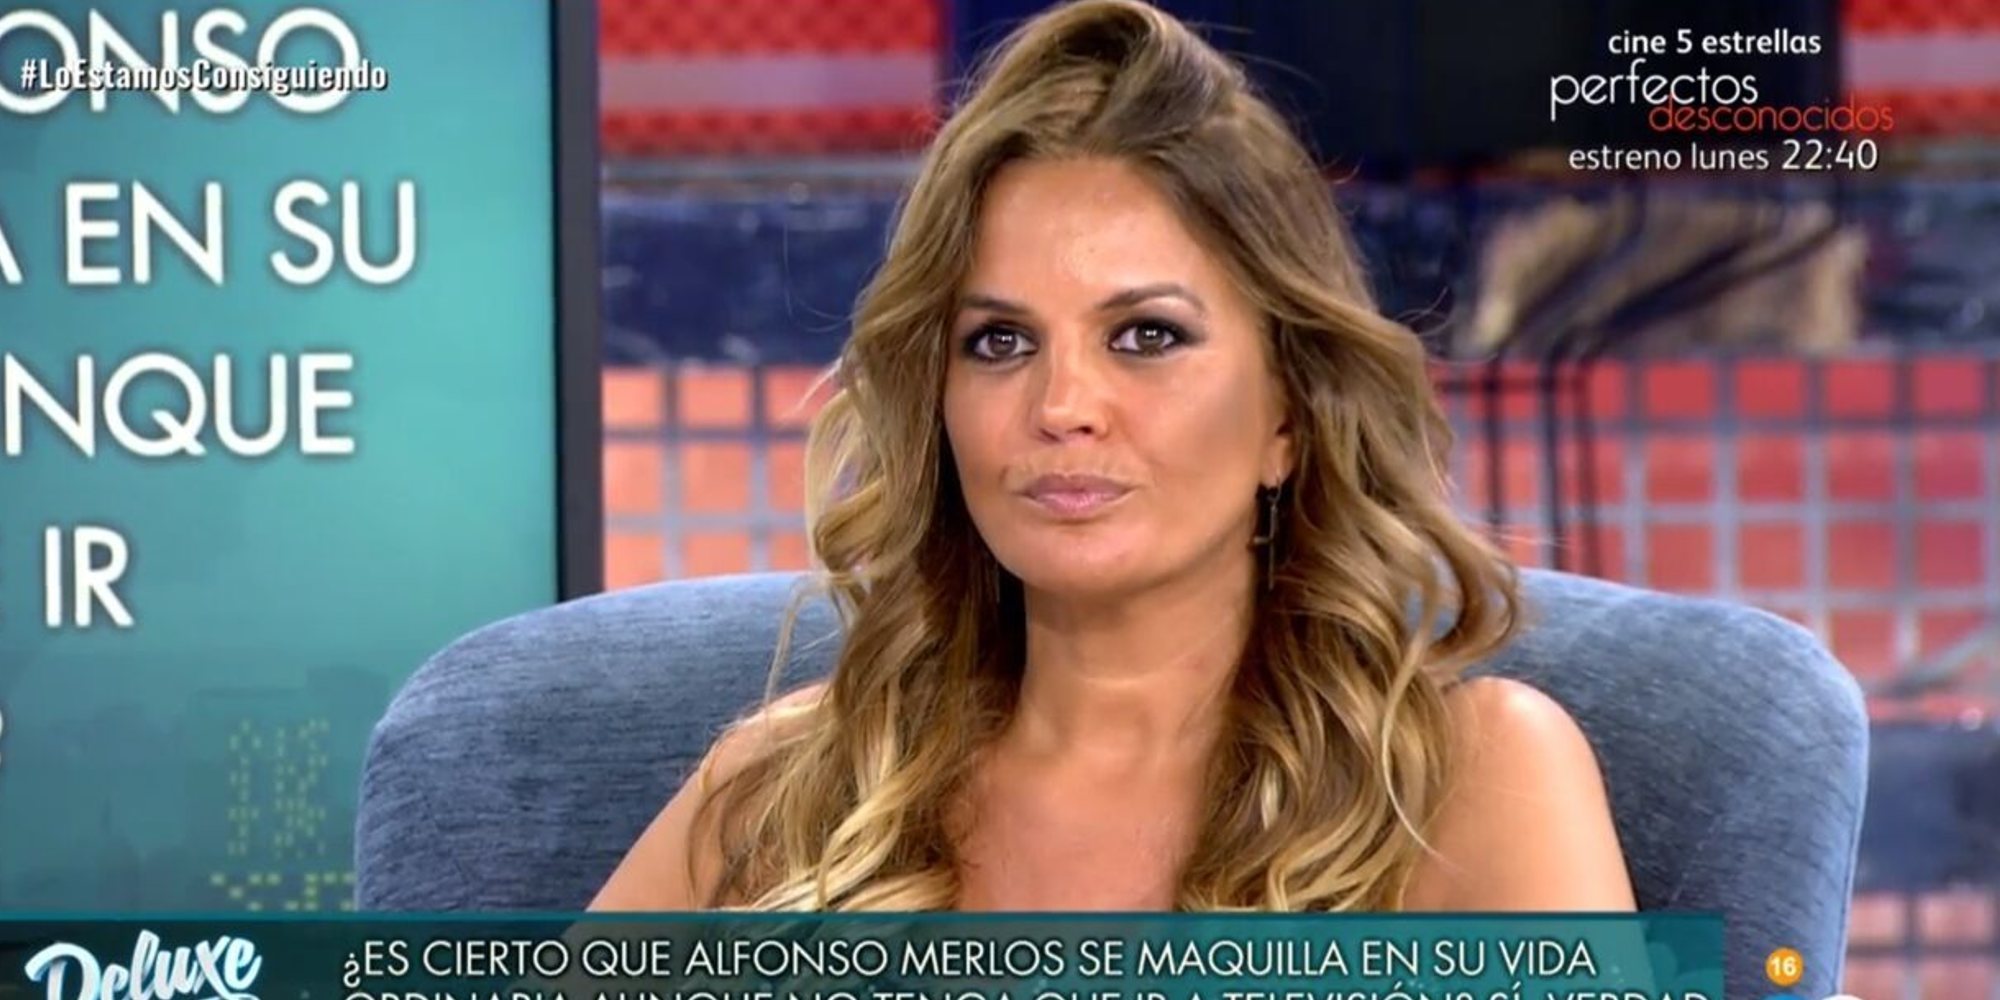 Primeras palabras de Marta López tras su despido fulminante de Mediaset: "Lo bueno pesa más"